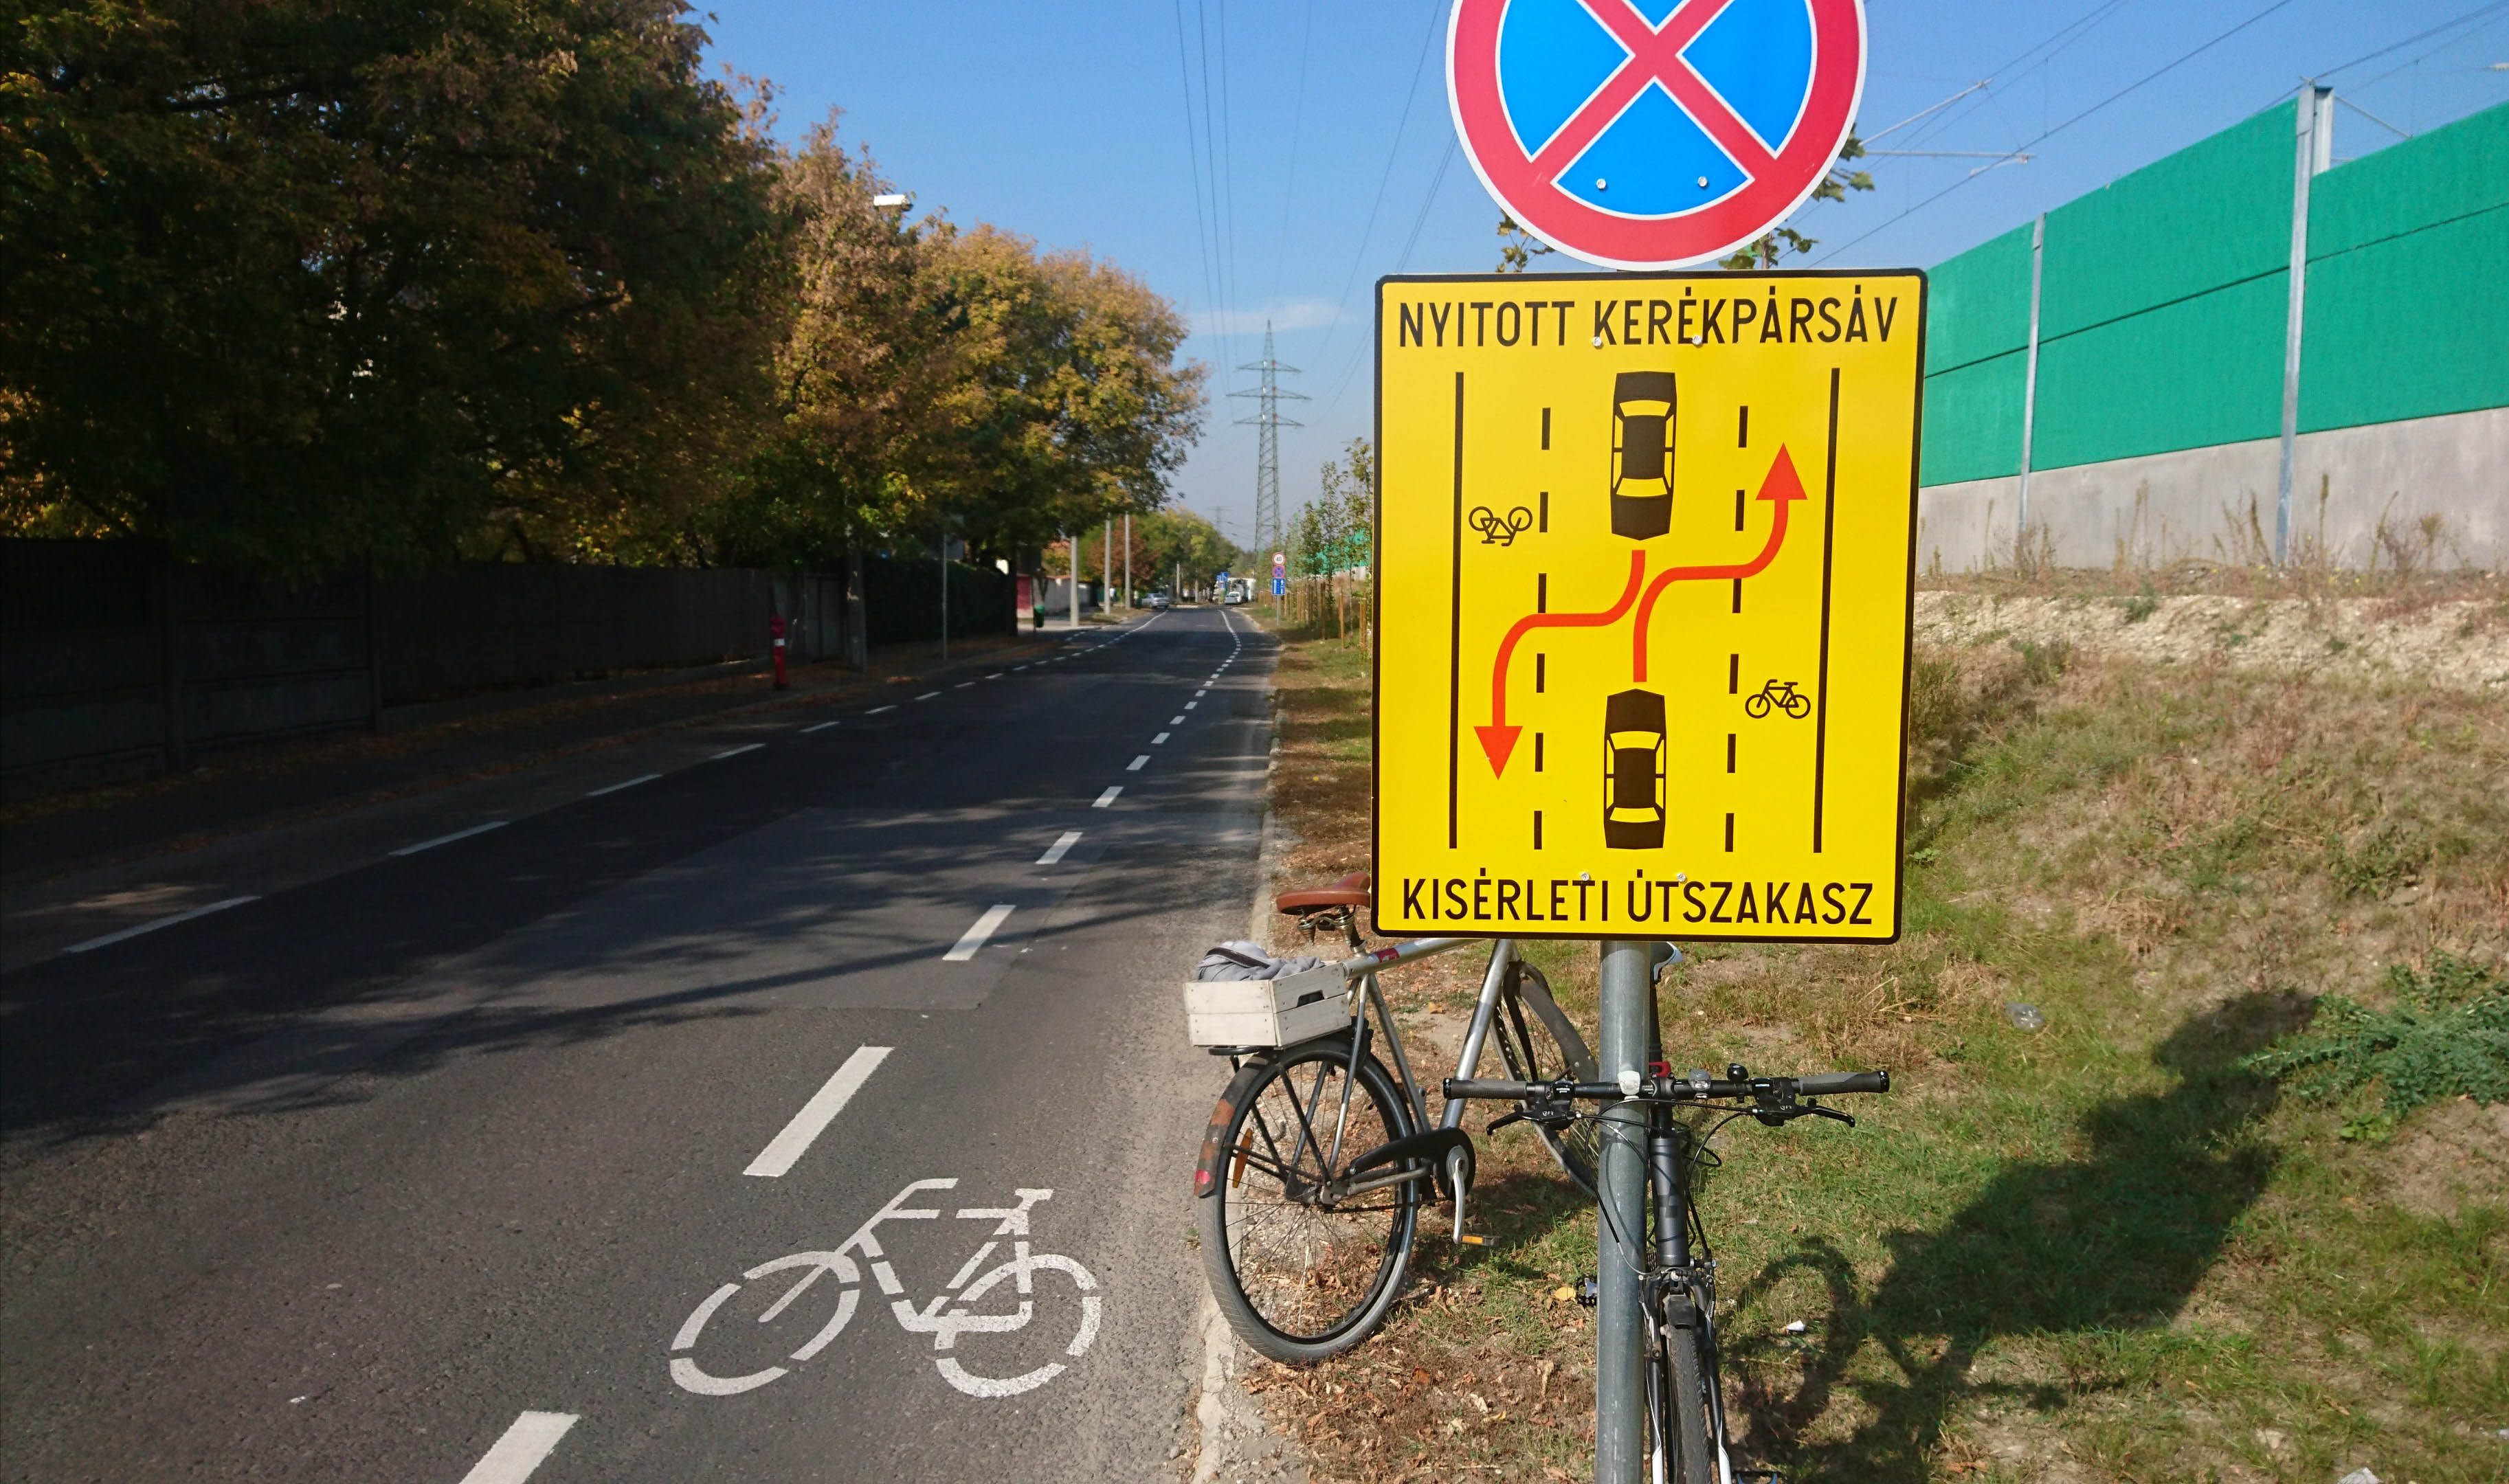 Bemutatjuk az első budapesti nyitott kerékpársávot